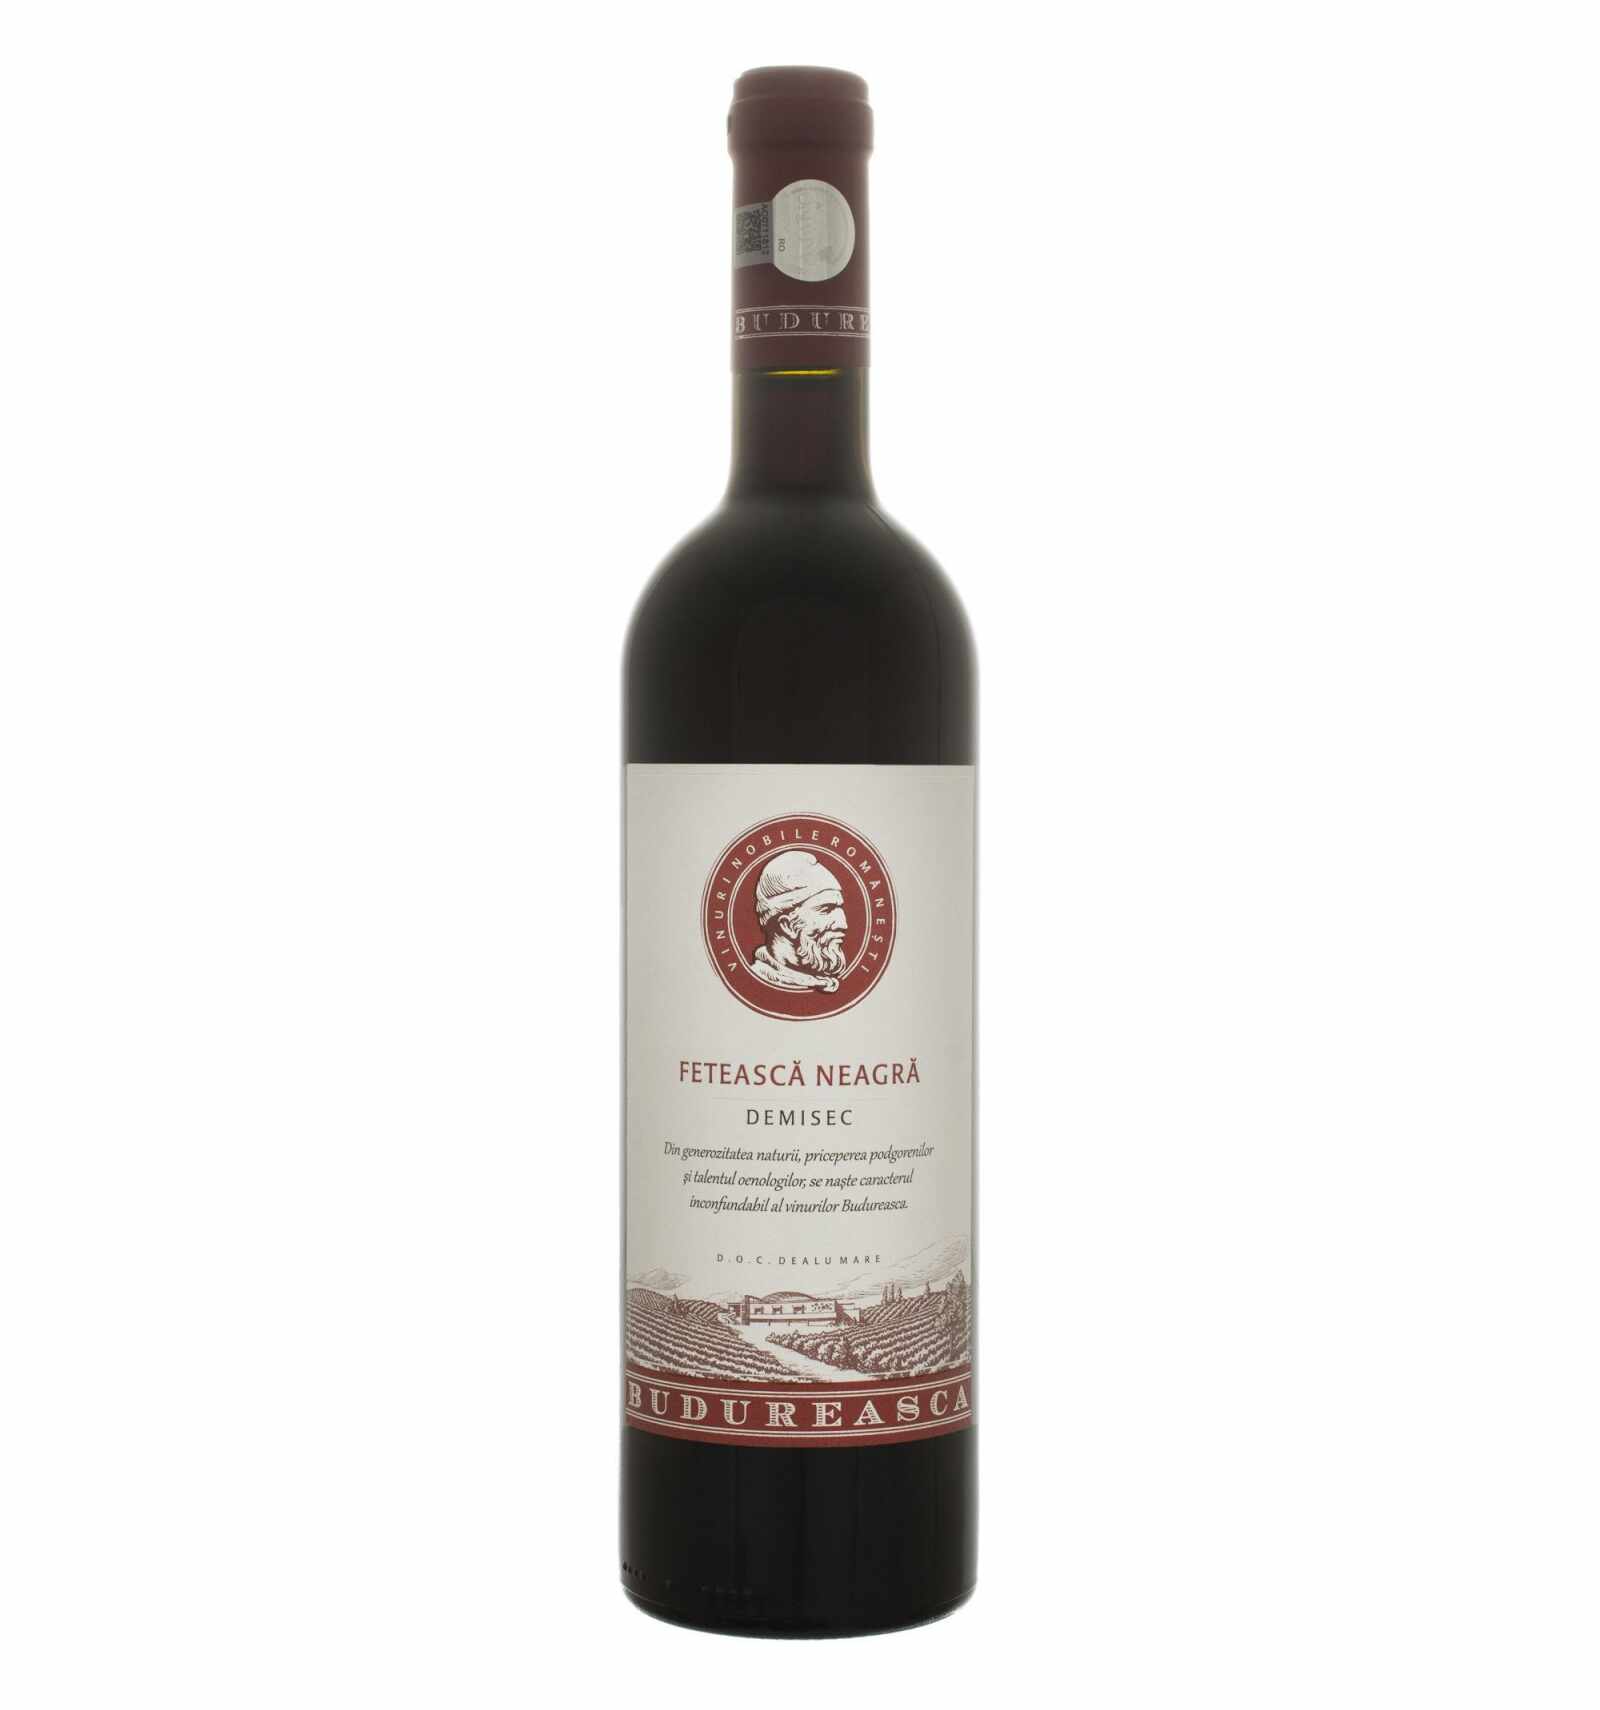 Vin rosu demisec, Feteasca Neagra, Budureasca Dealu Mare, 0.75L, 14.5% alc., Romania